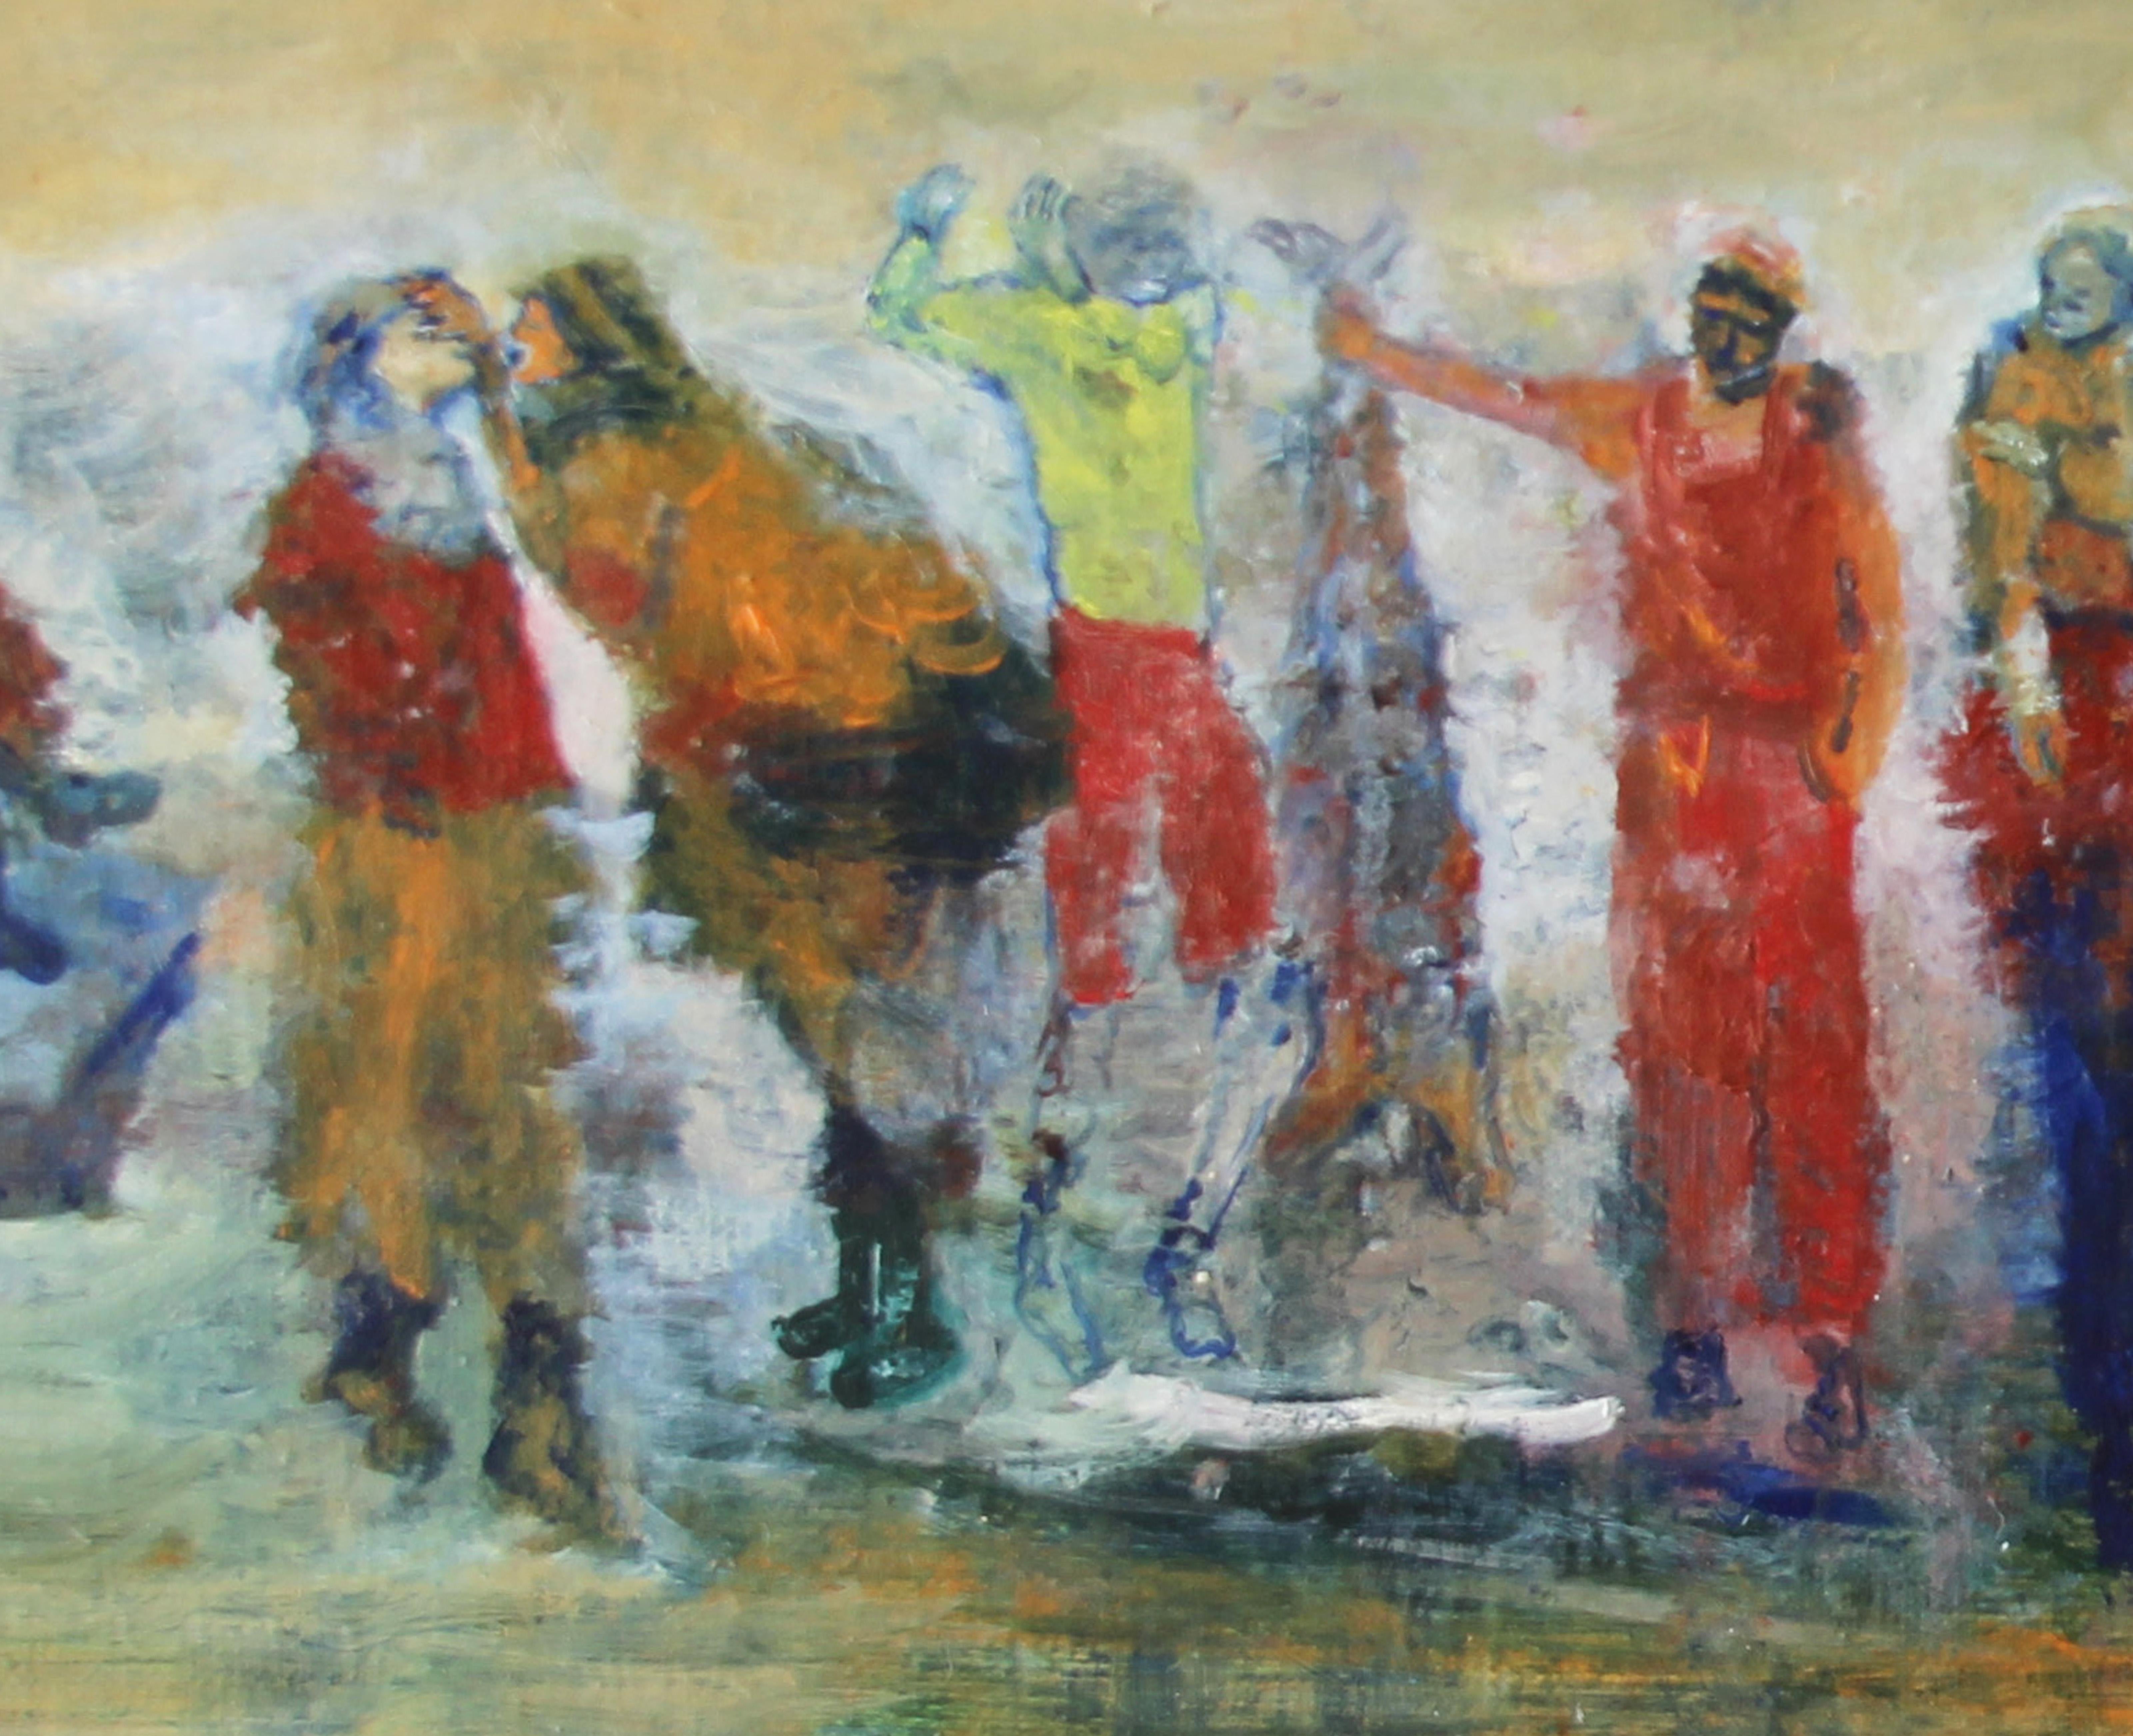 Title: 52 - 3 ème degré (2) - Contemporary Painting by Elodie Huré